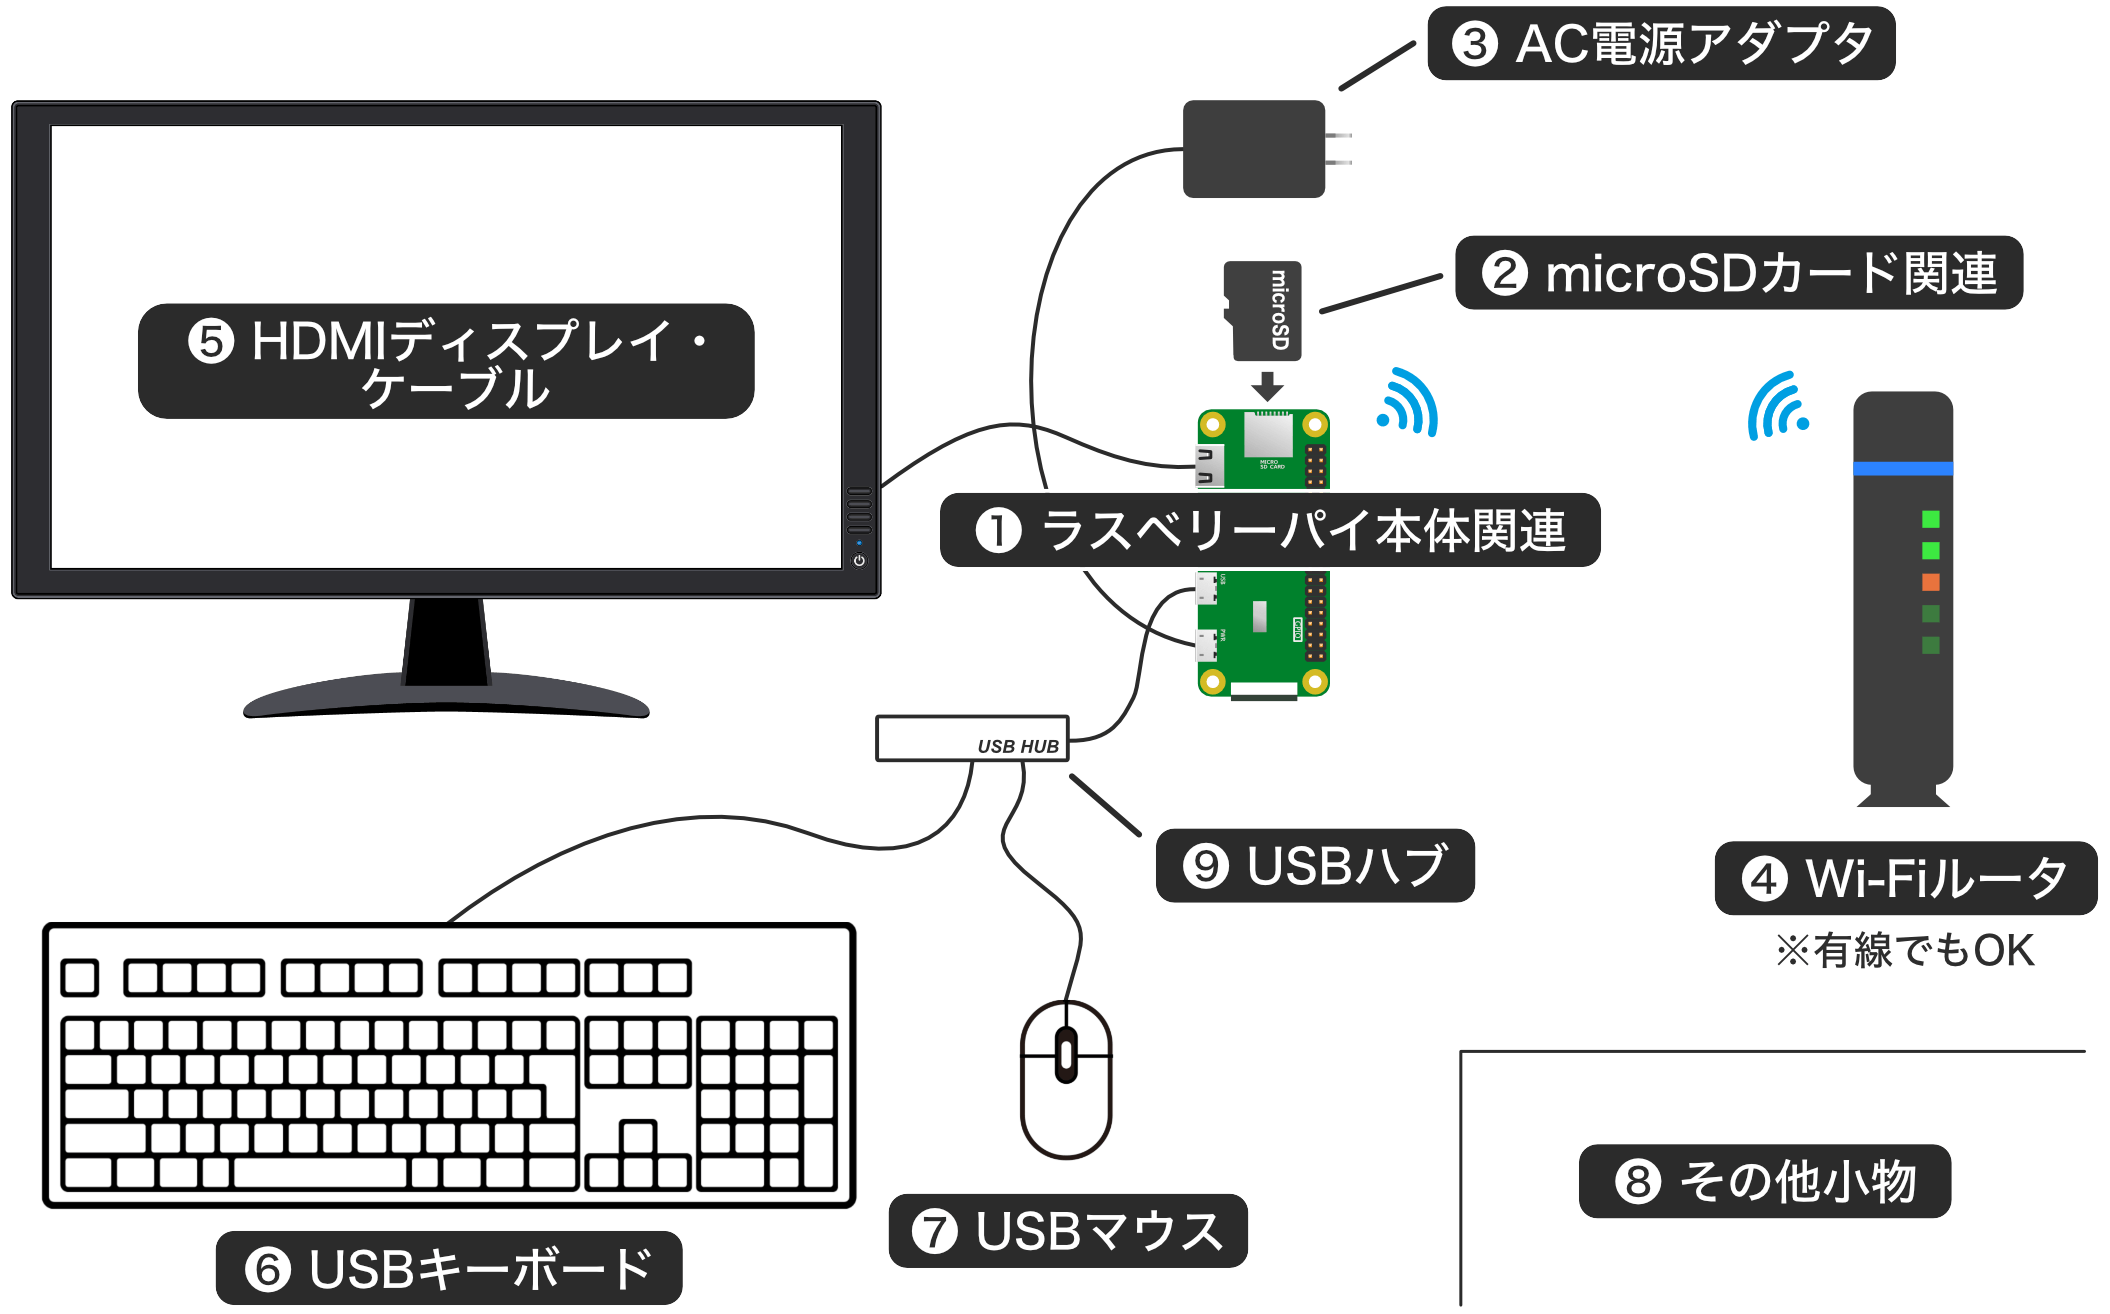 Raspberry Pi Zeroデスクトップタイプ機器構成